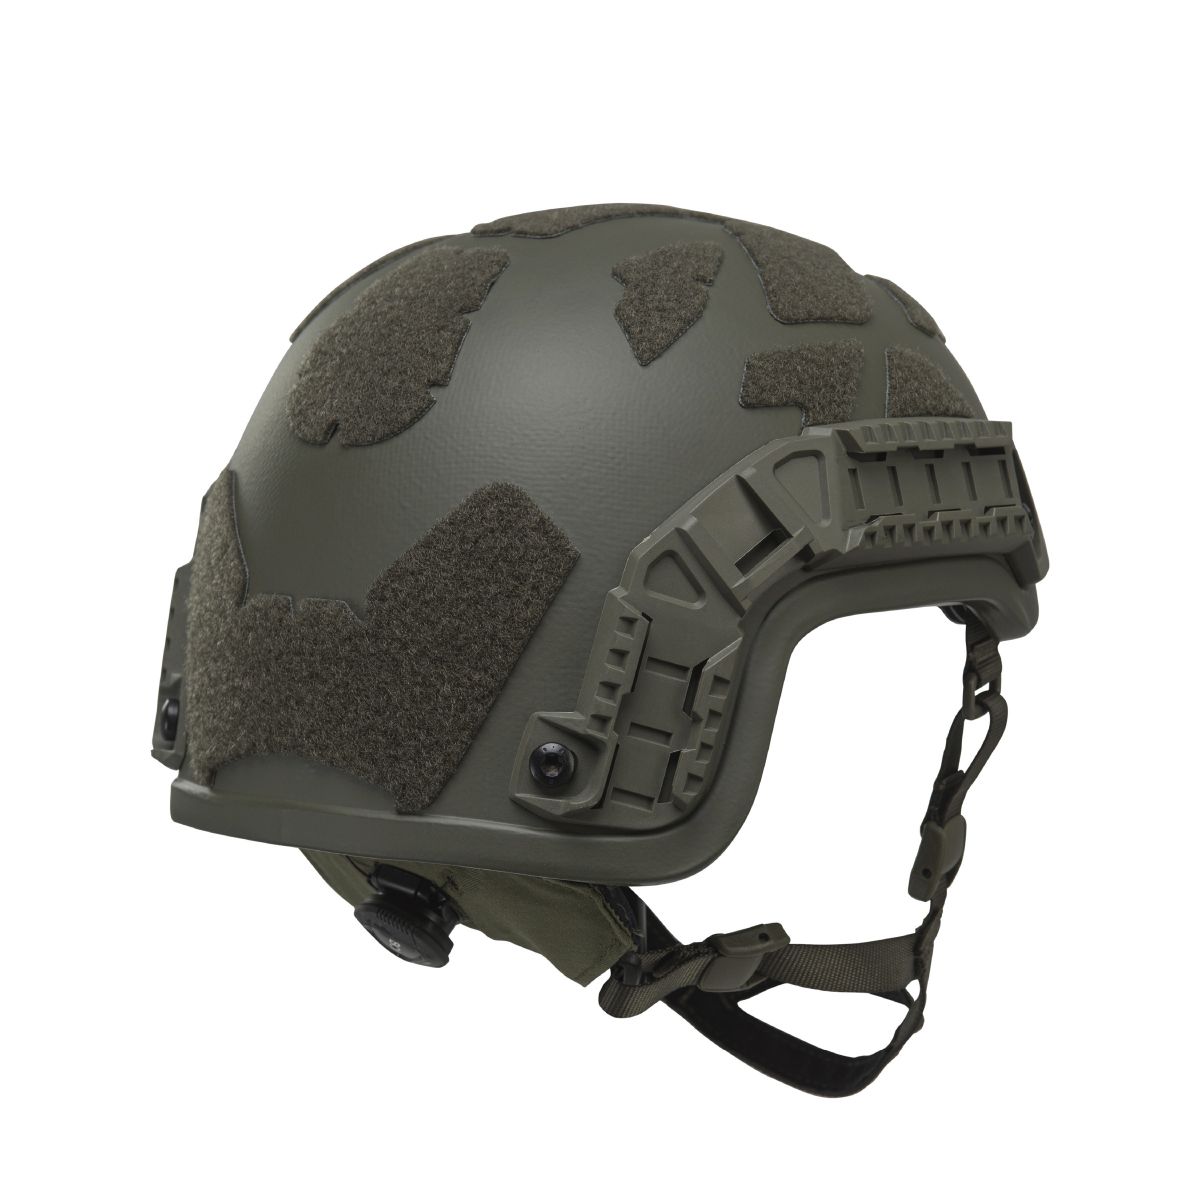 Кевларовый шлем ARCH Helmet L (ECH) с вырезом под активные наушники. Олива 7